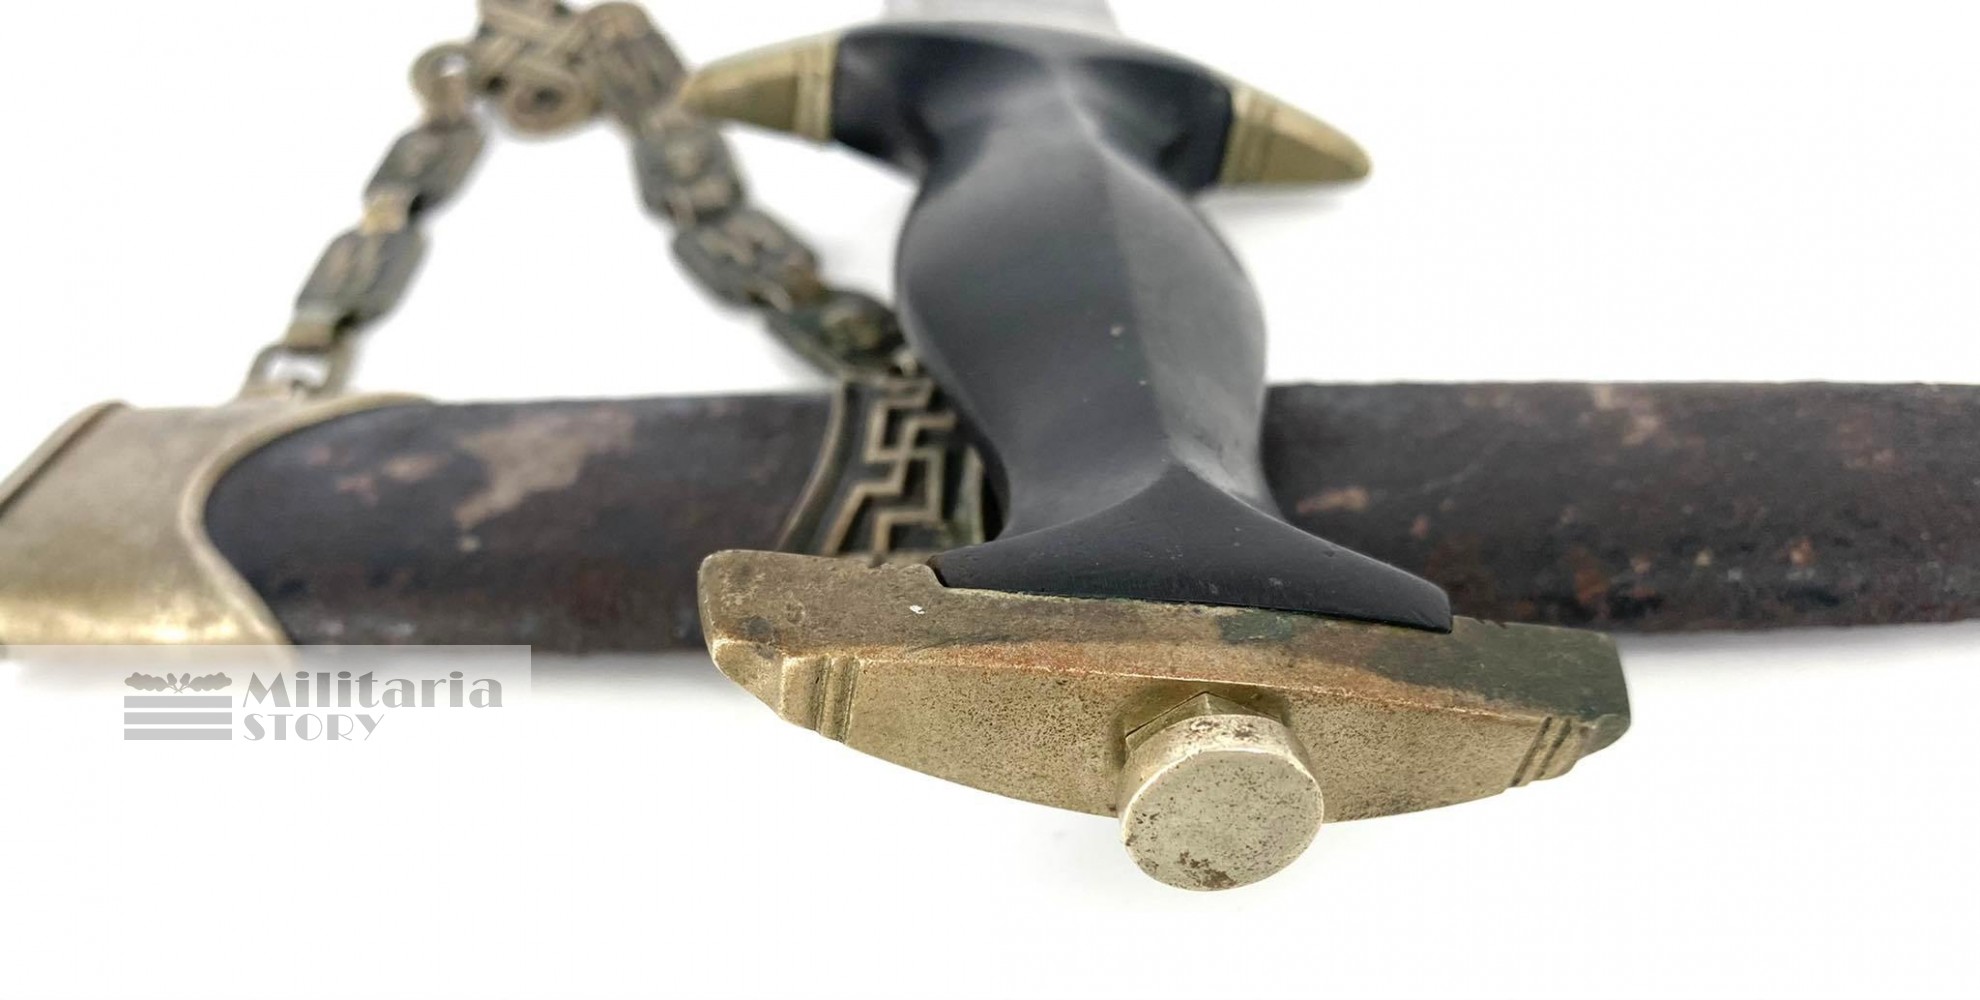 SS Early Chained Dagger - SS Early Chained Dagger: Third Reich Edged weapon